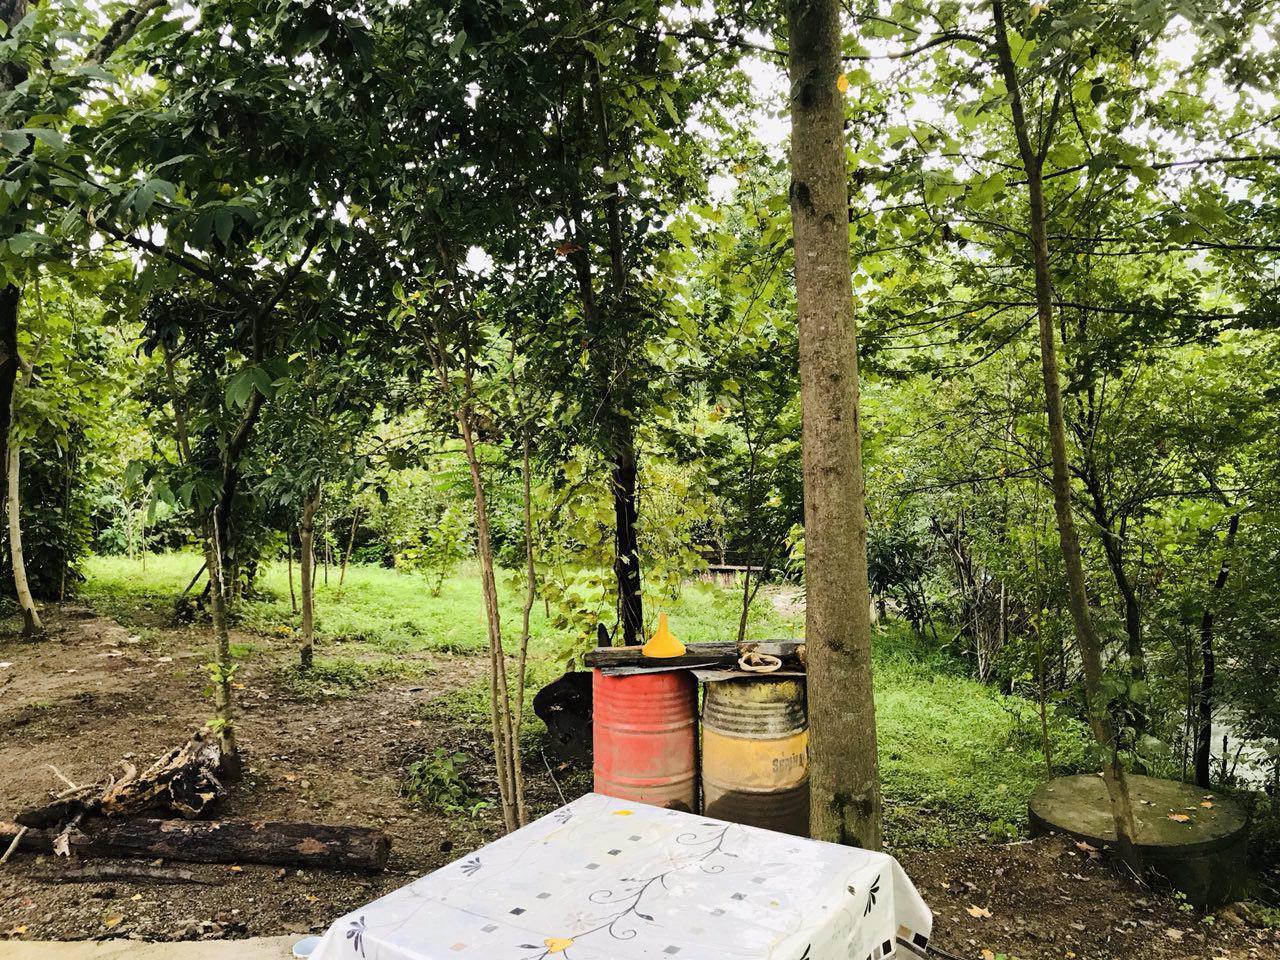 اقامتگاه بومگردی در فومن جنگلی در کنار رودخانه